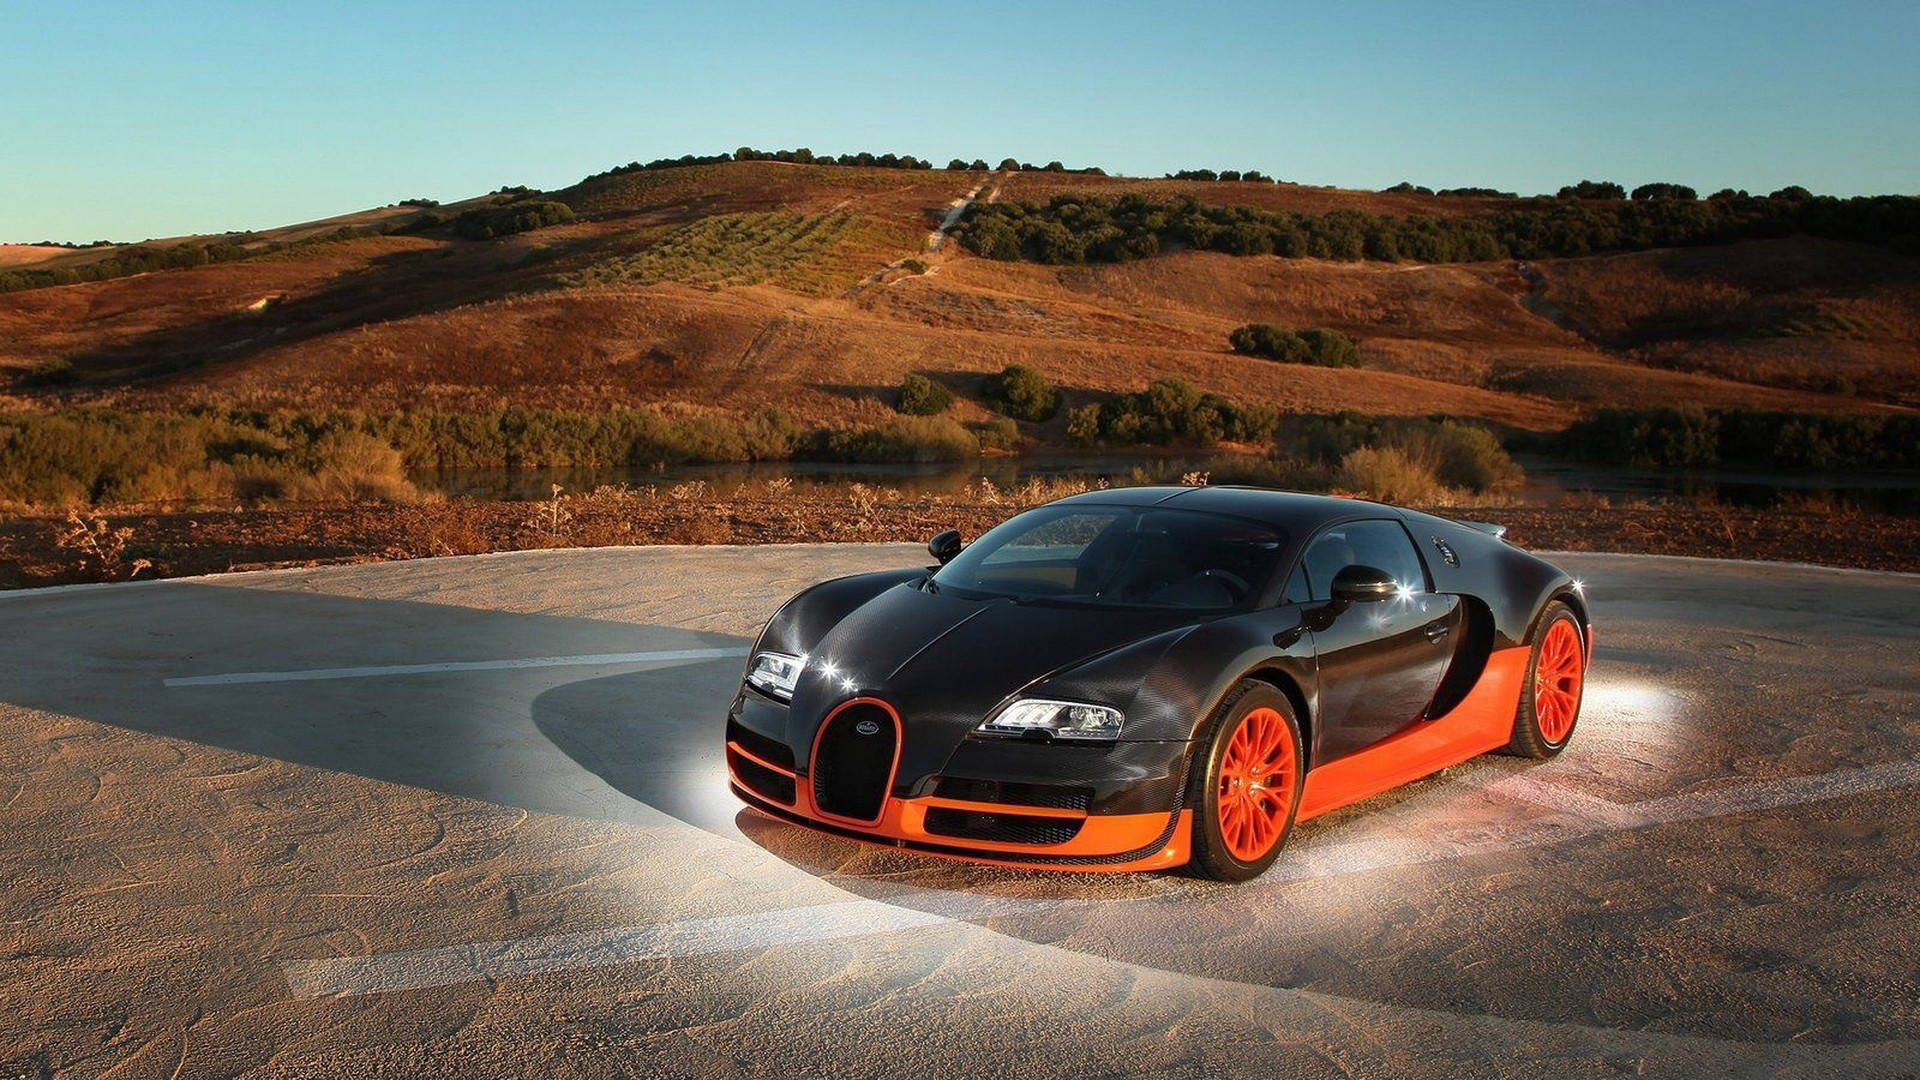 Orange Cool Bugatti Wallpaper